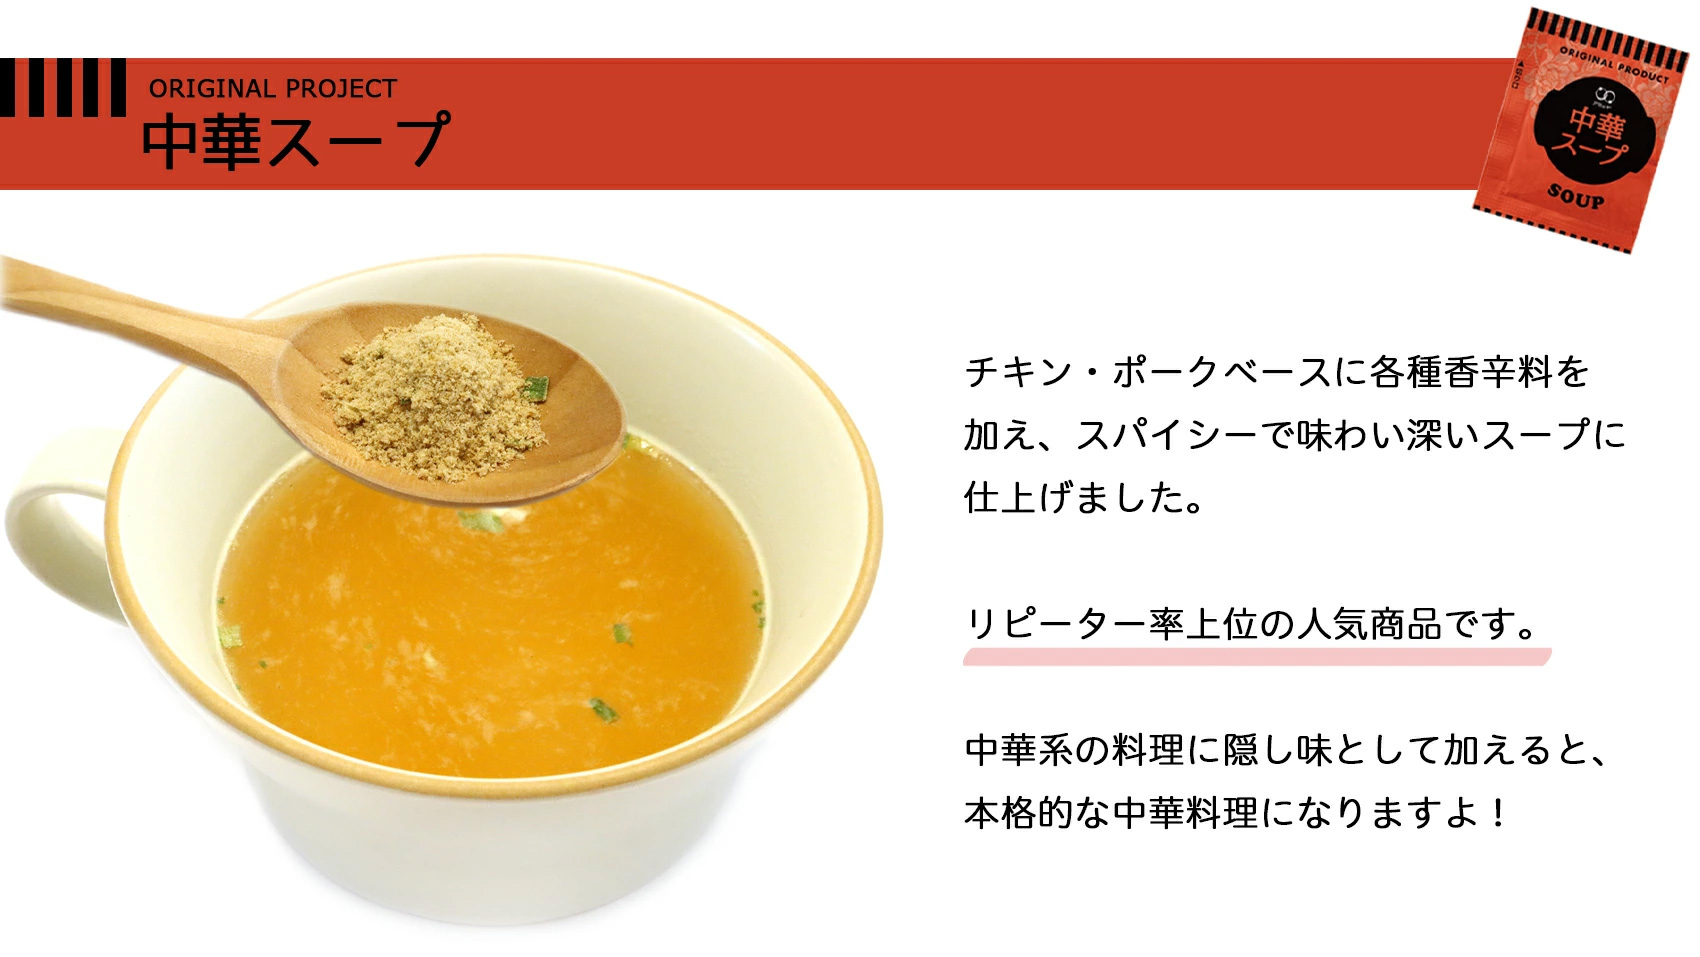 中華スープの紹介